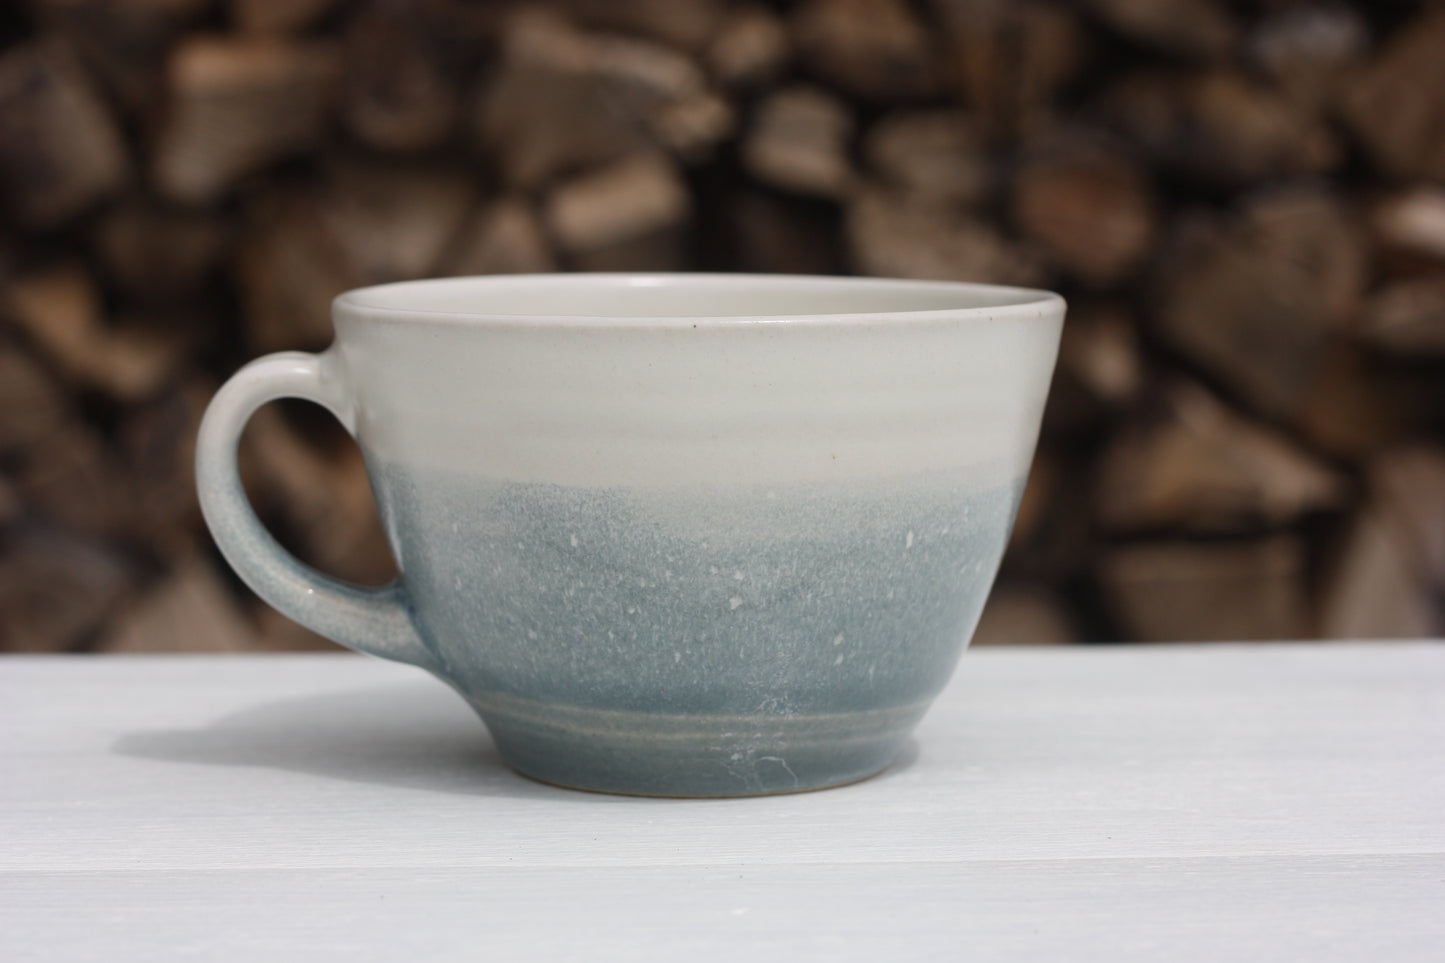 Stormy Day glazed Mug 14oz 400ml Large Mug in Blue and White Glaze